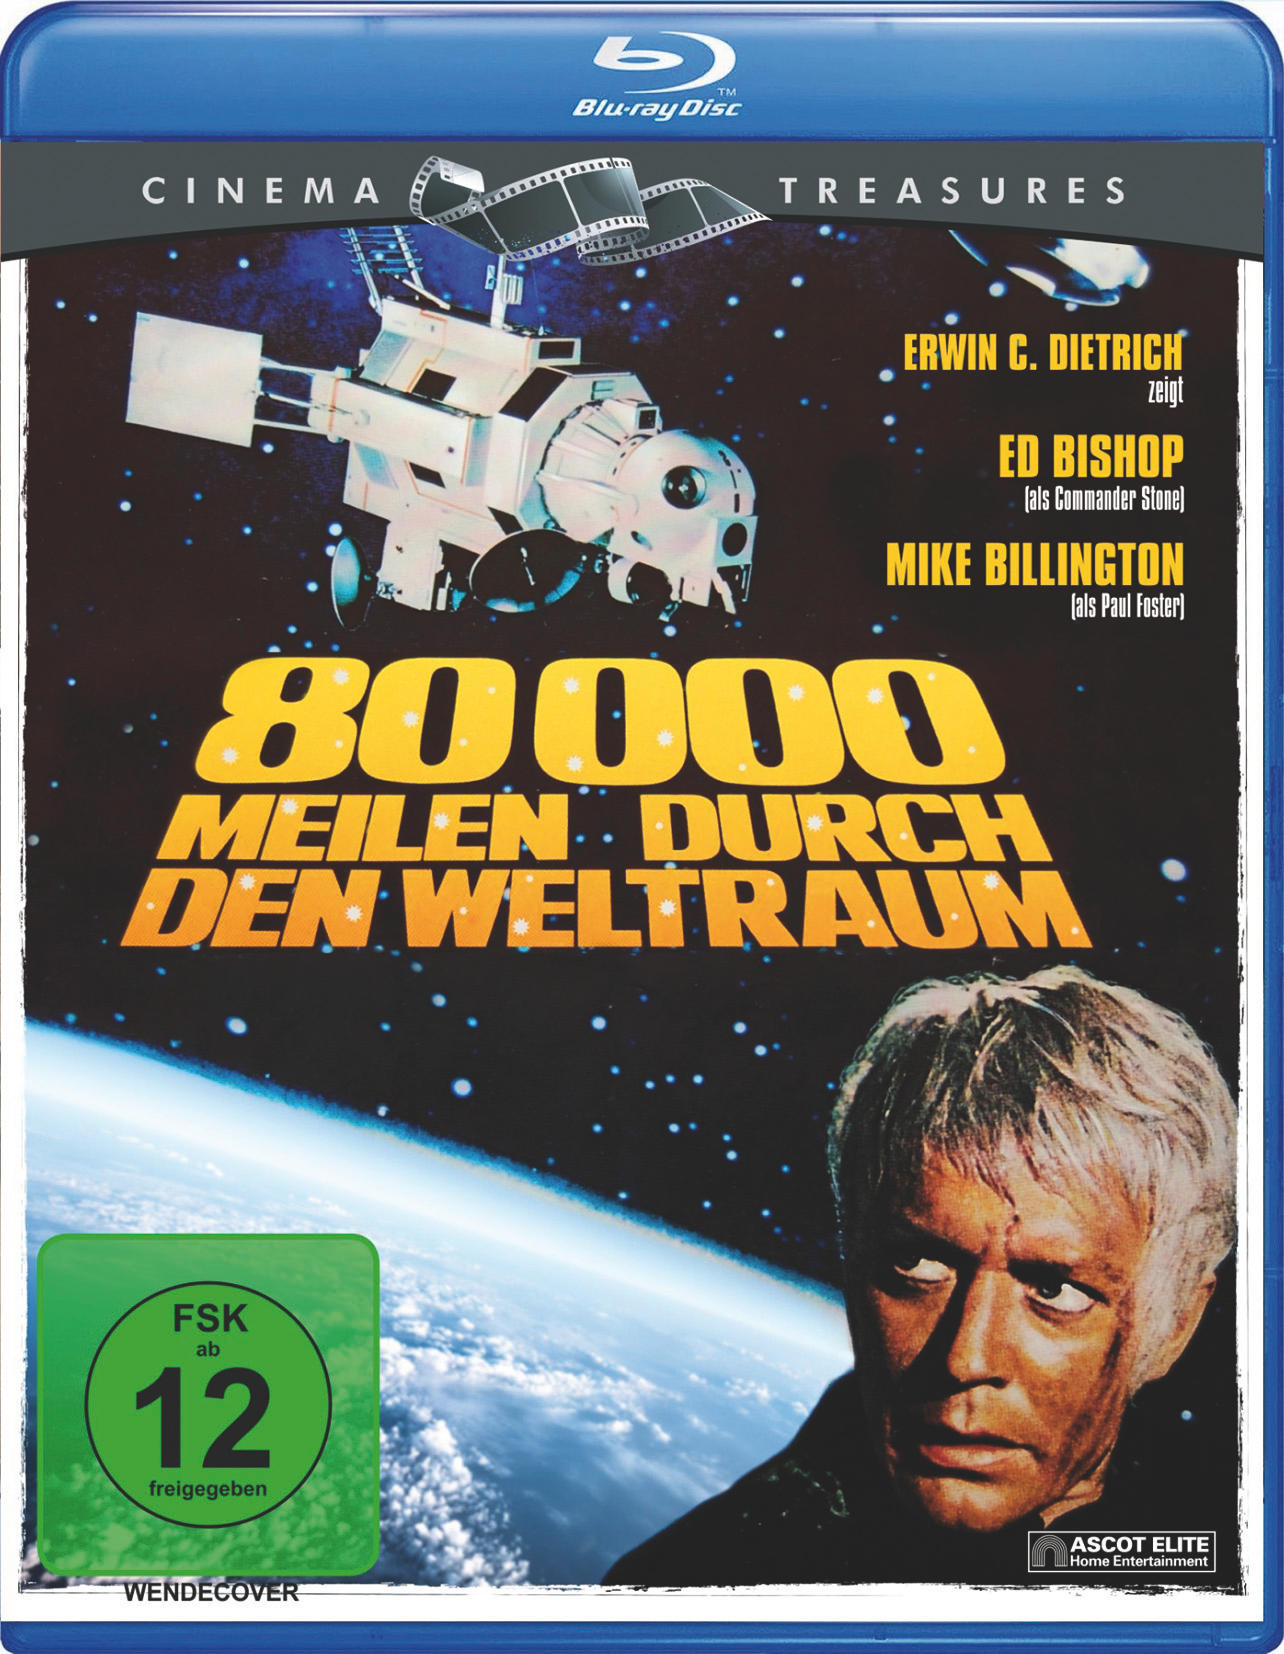 (Cinema Treasures) Blu-ray Meilen Weltraum 80.000 den durch